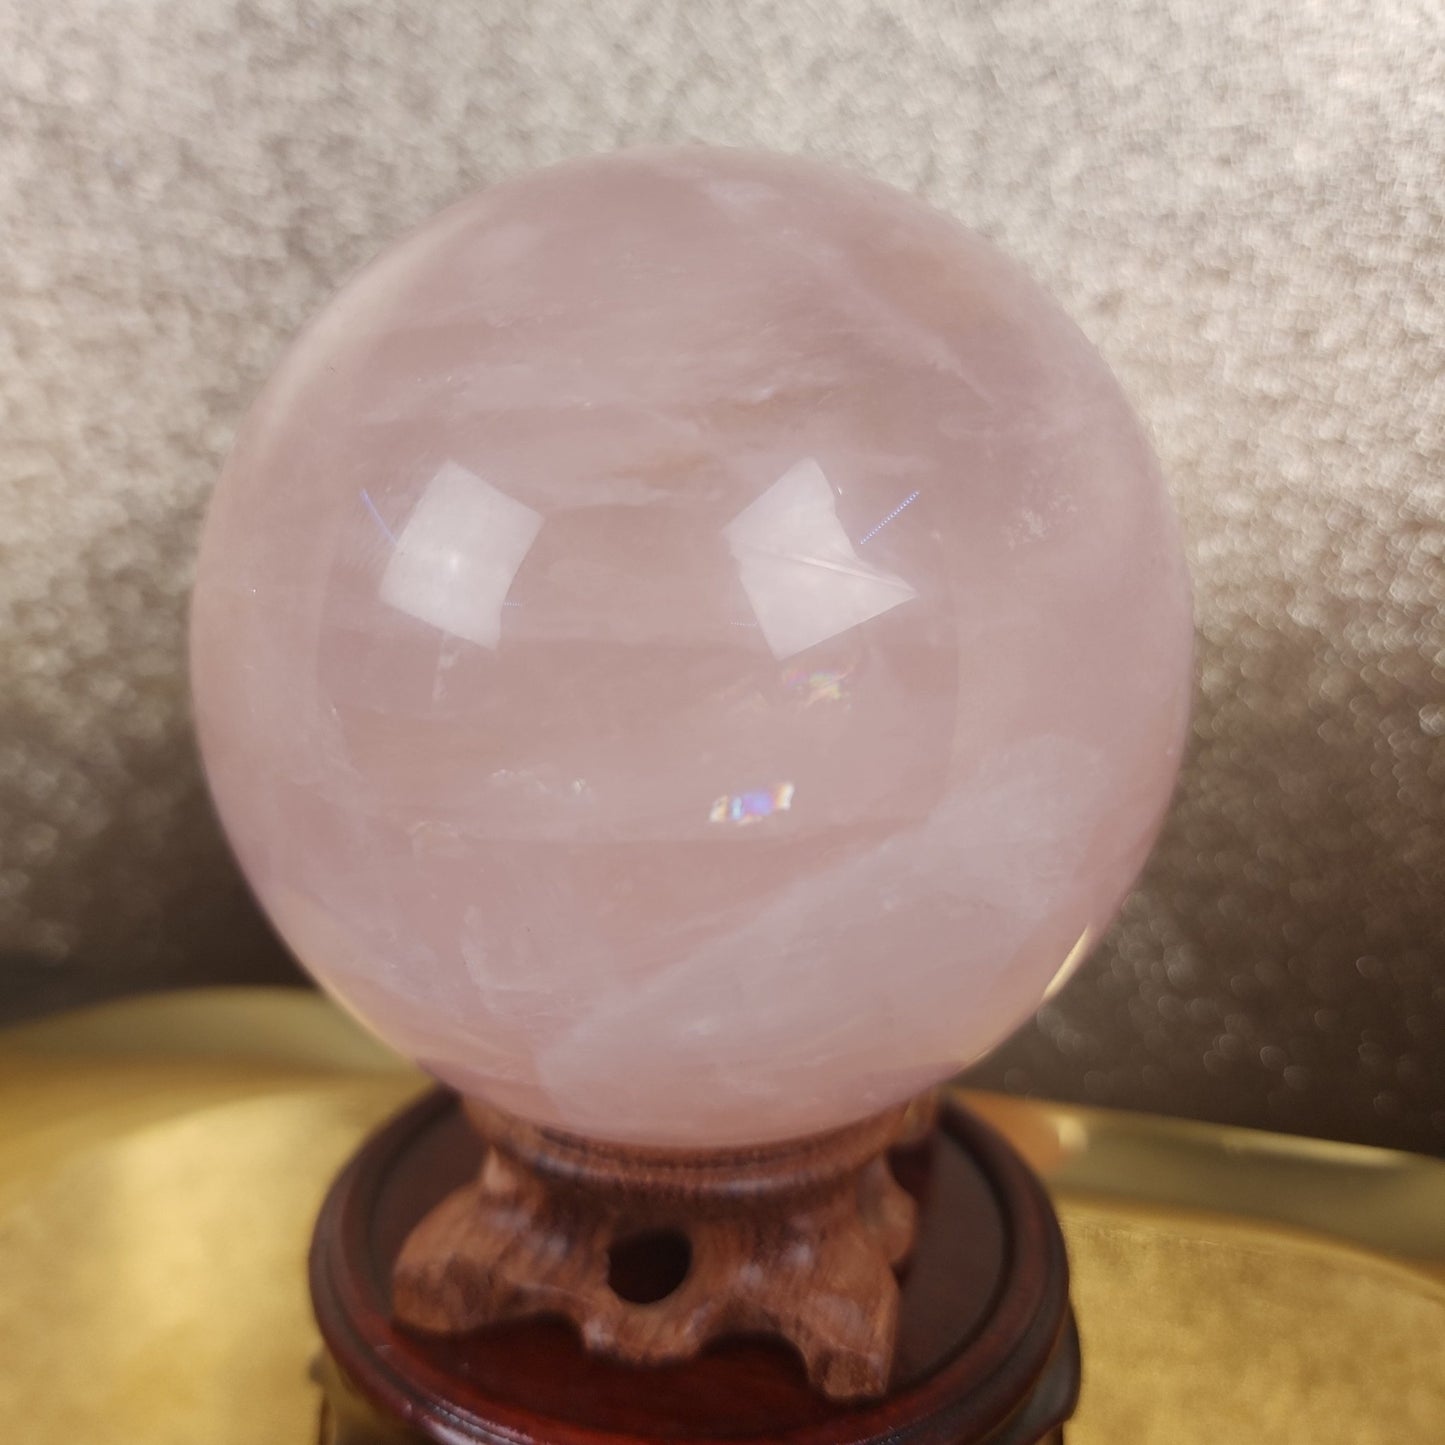 Rose Quartz Sphere - MagicBox Crystals